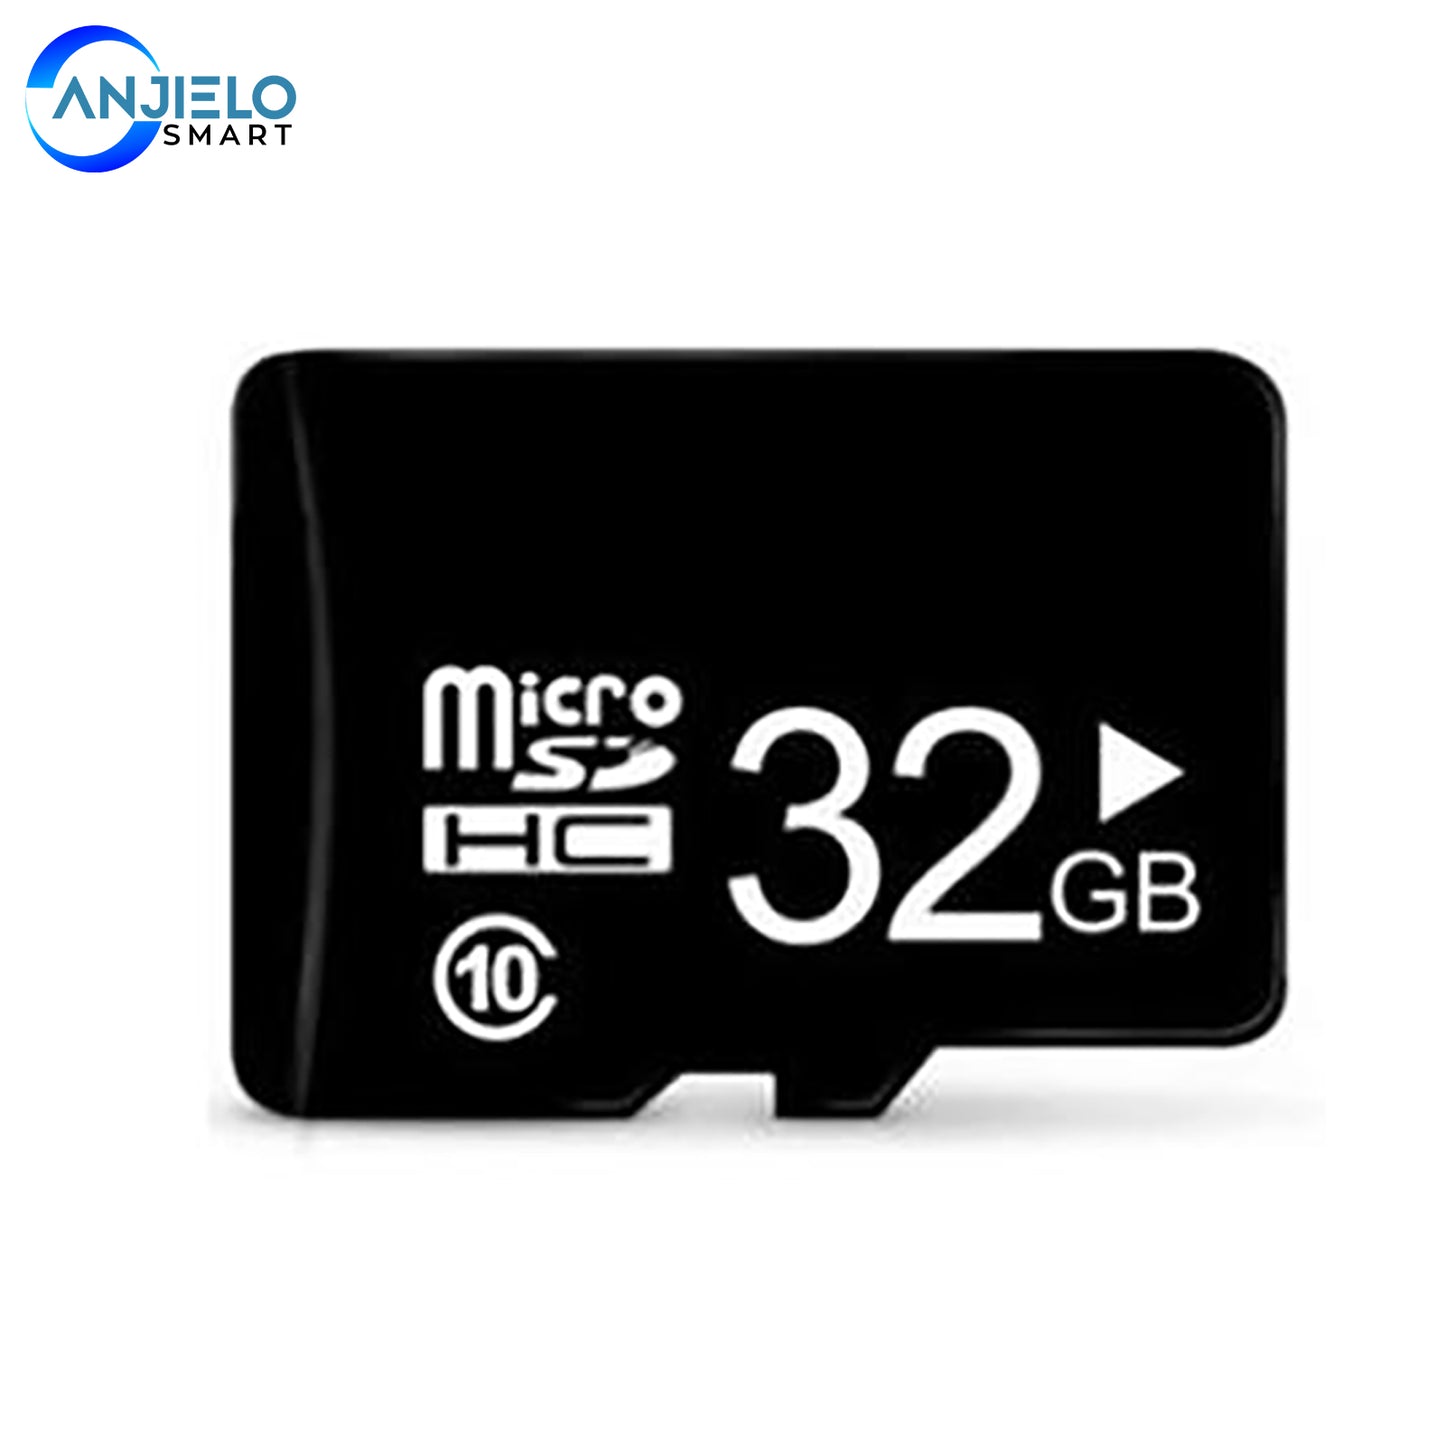 AnjieloSmart 32G SD Card for Video Doorbell Intercom System